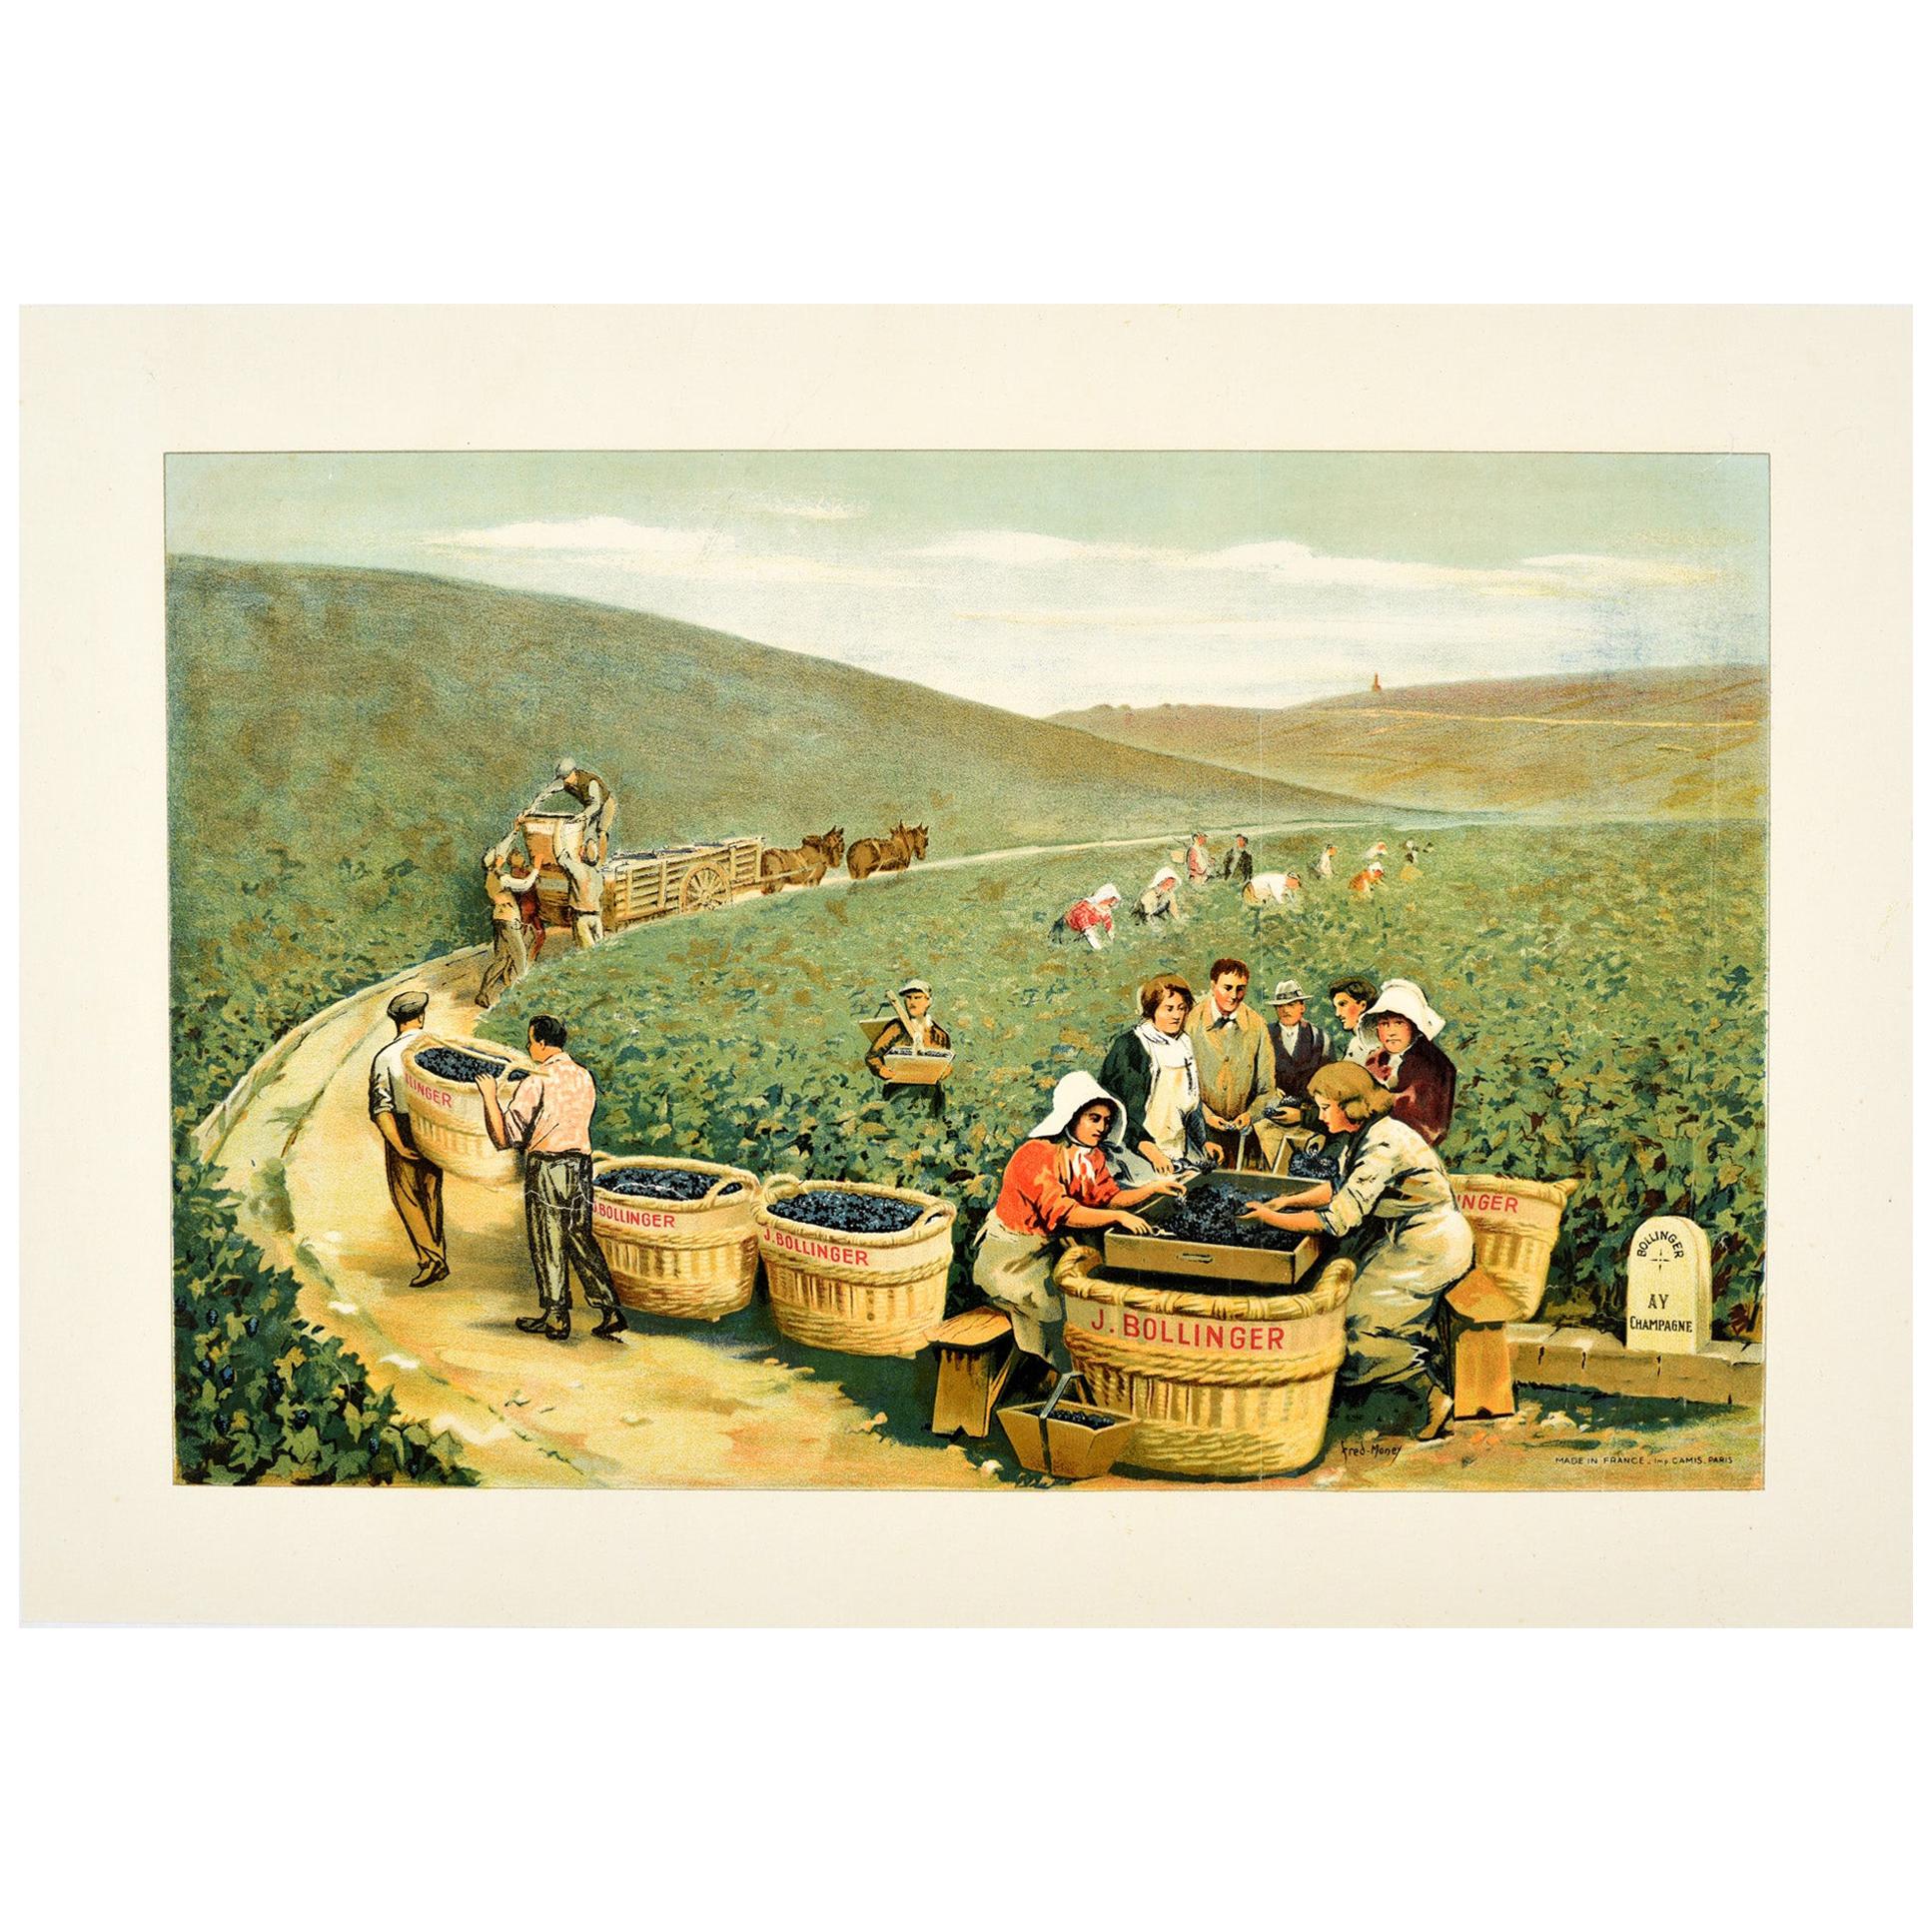 Original Antique J. Bollinger Champagne Poster Sparkling Wine Vineyard Ay France For Sale